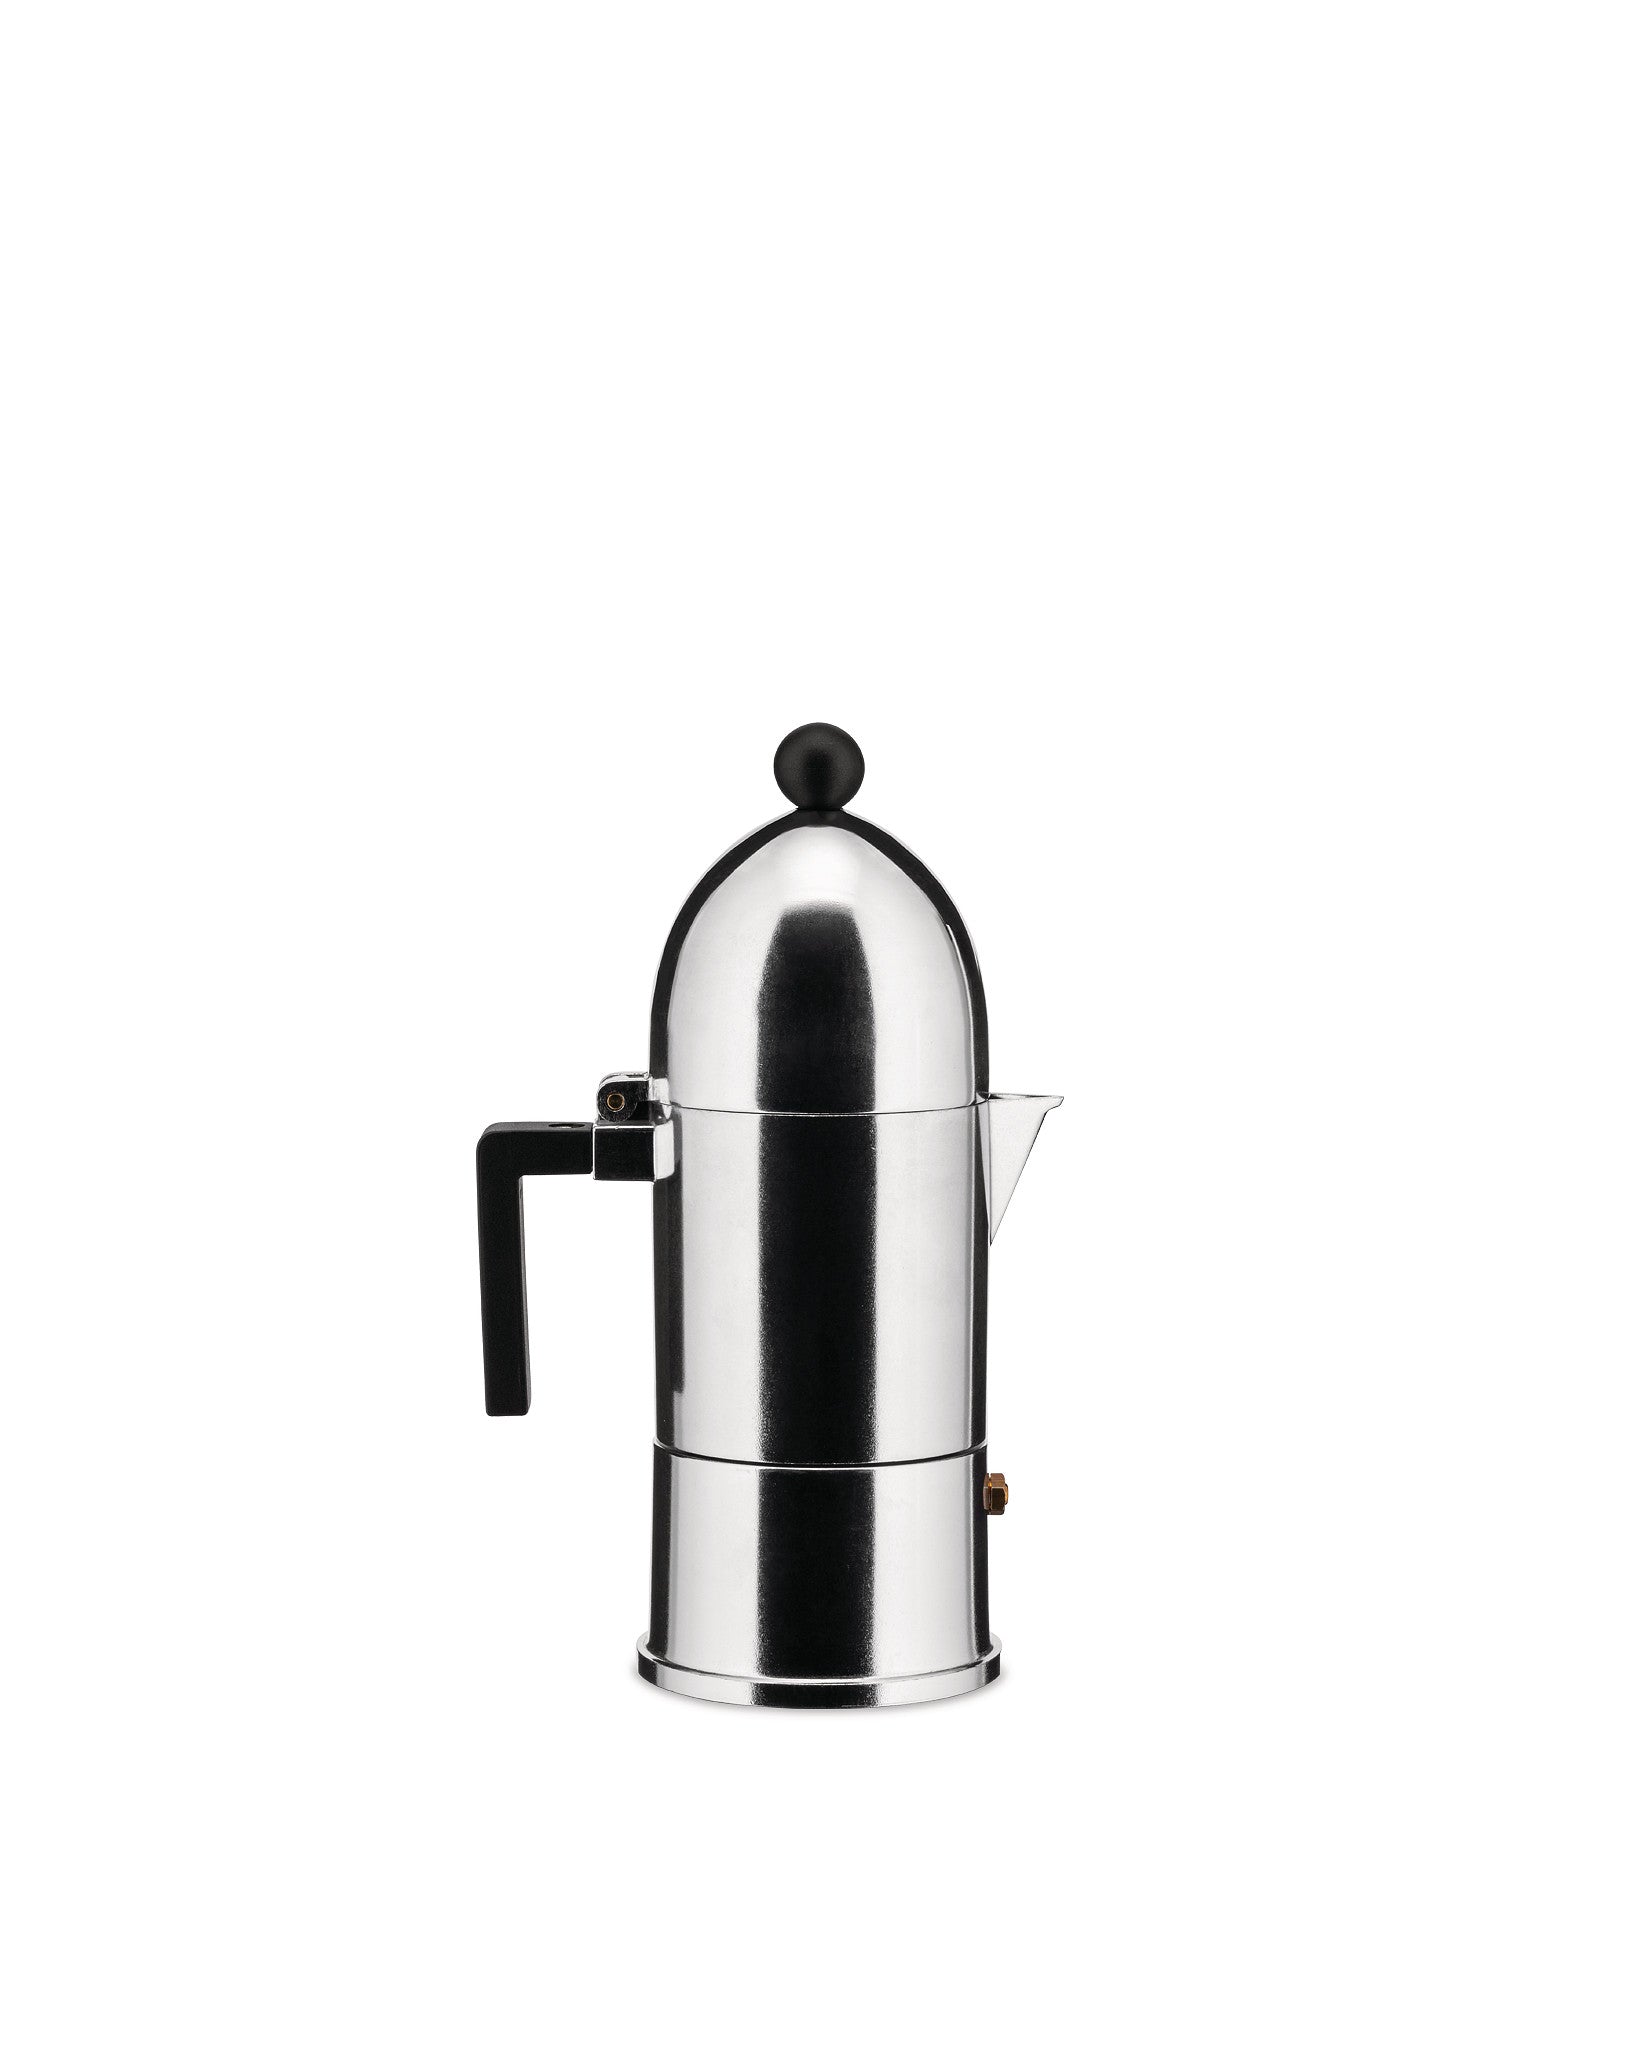 La cupola - Espresso coffee maker – Alessi Spa (EU)